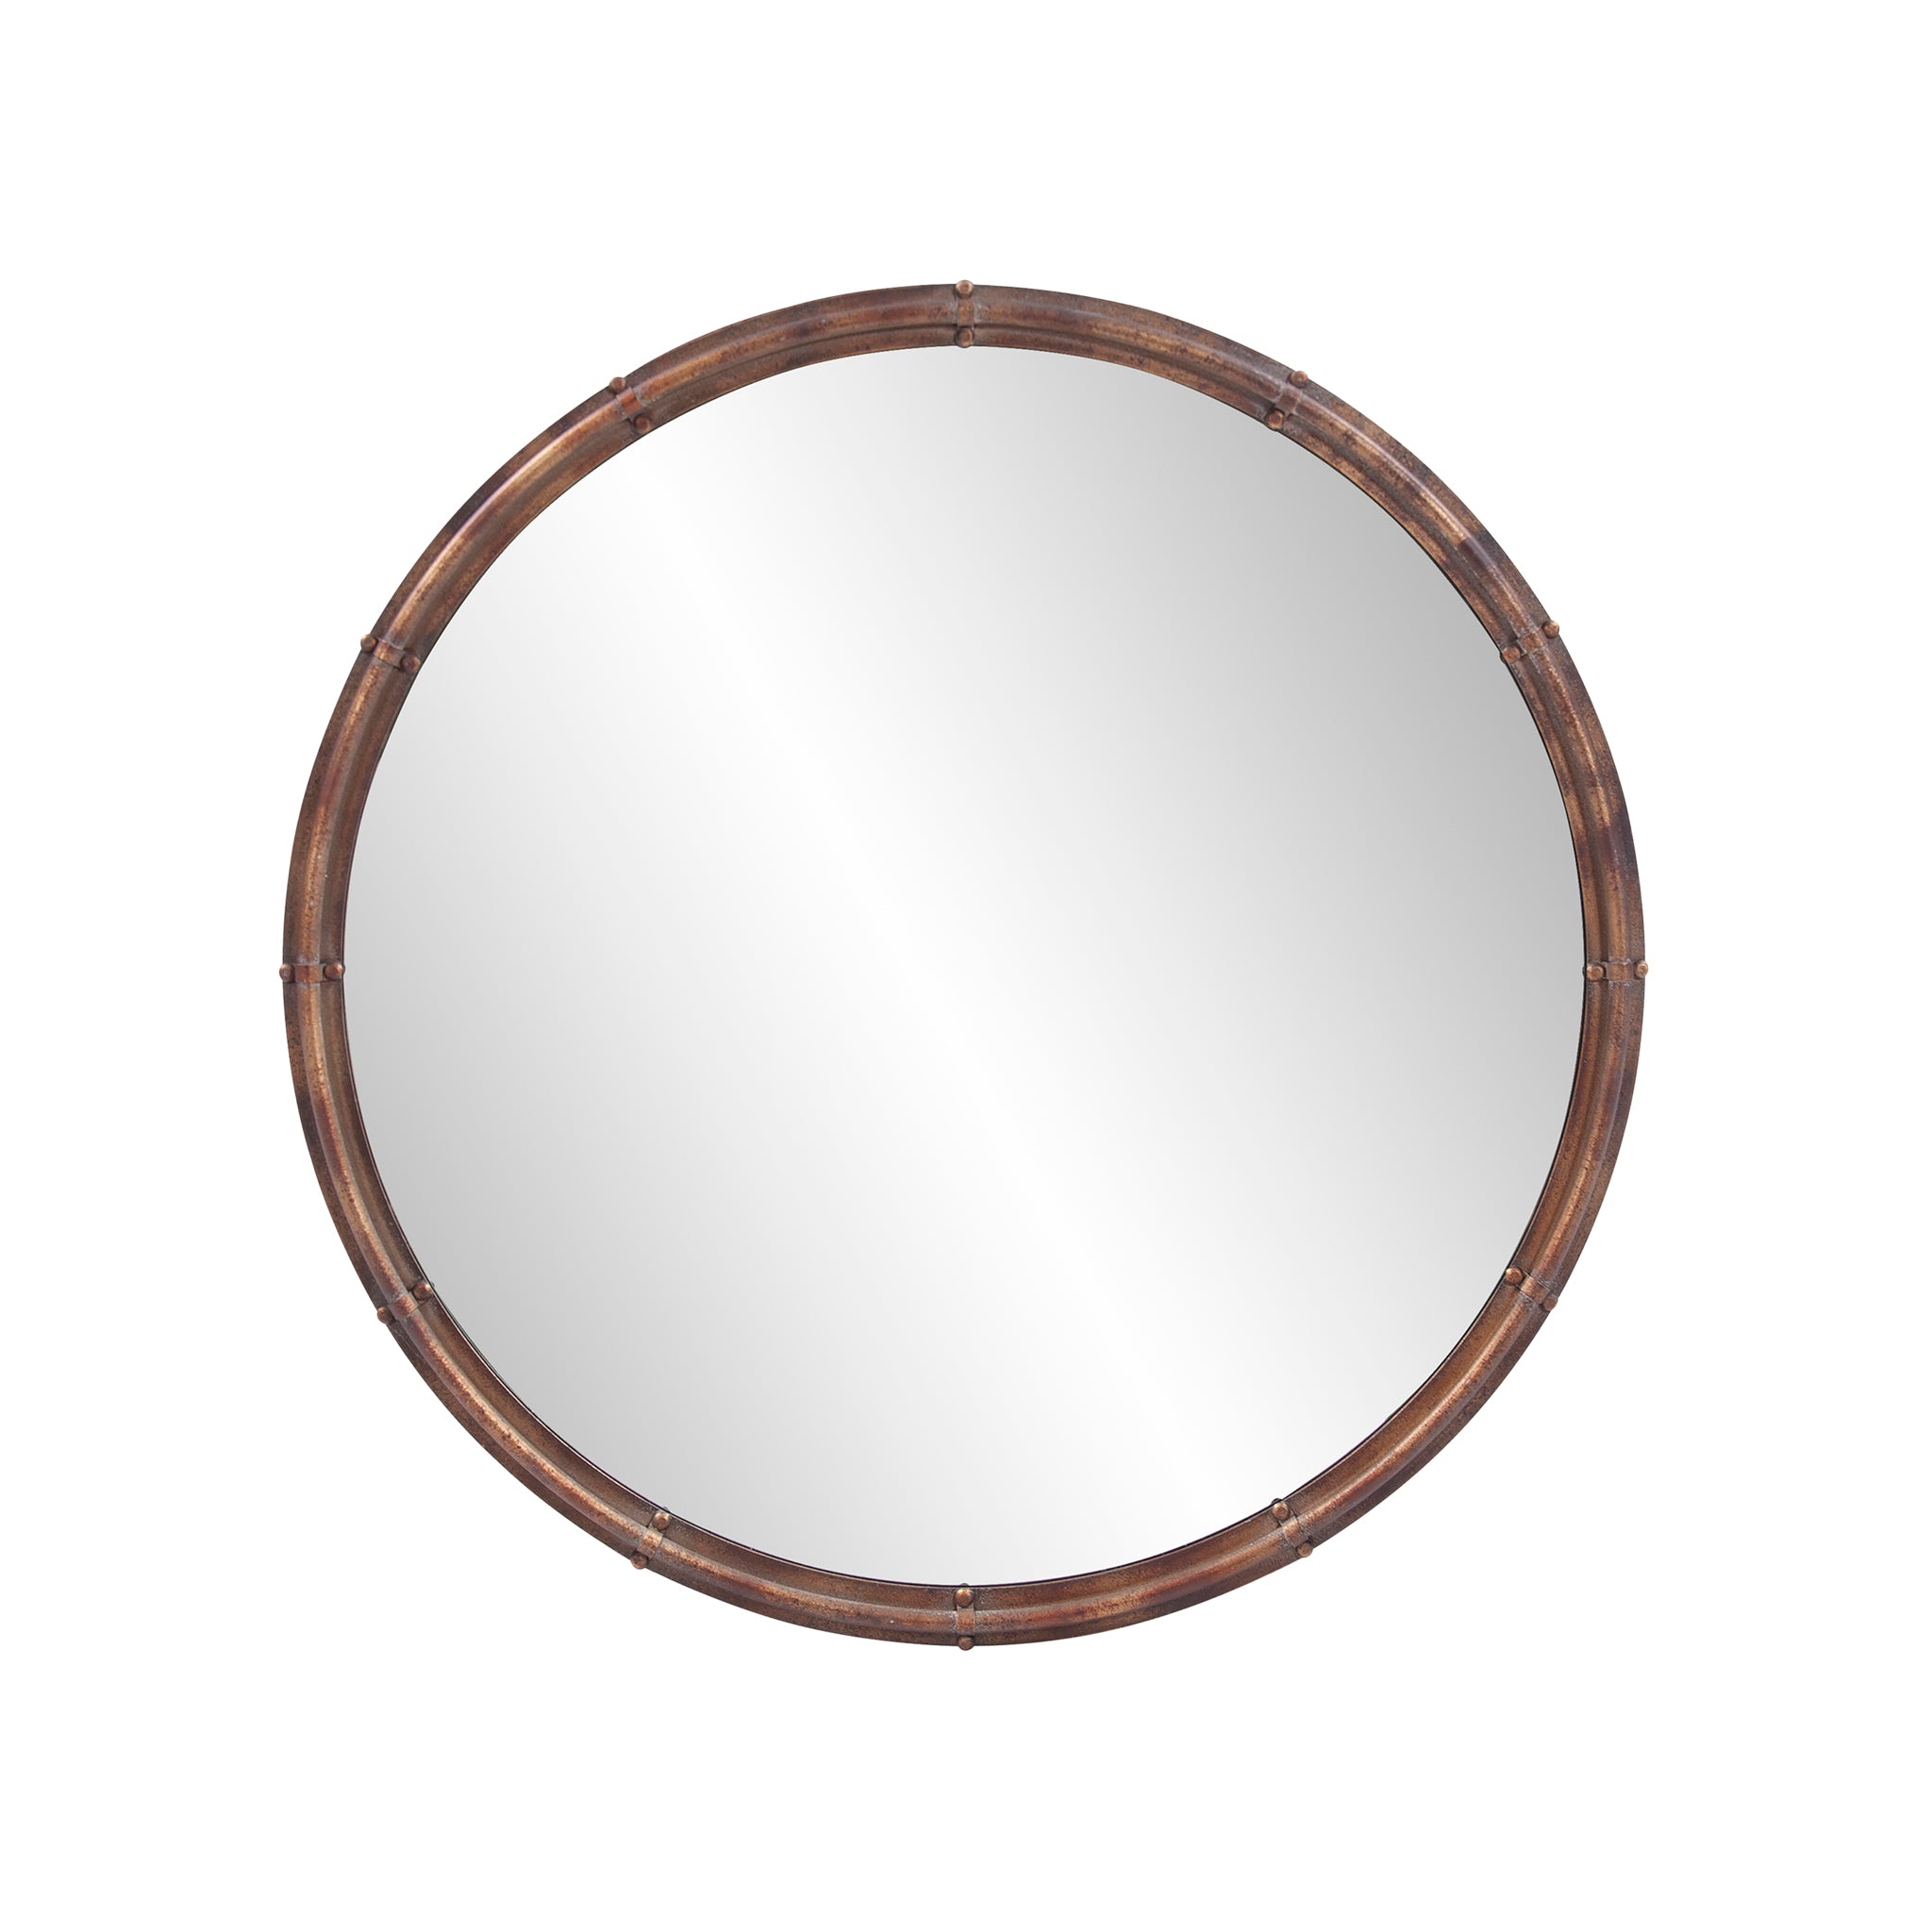 Nuova Round Mirror